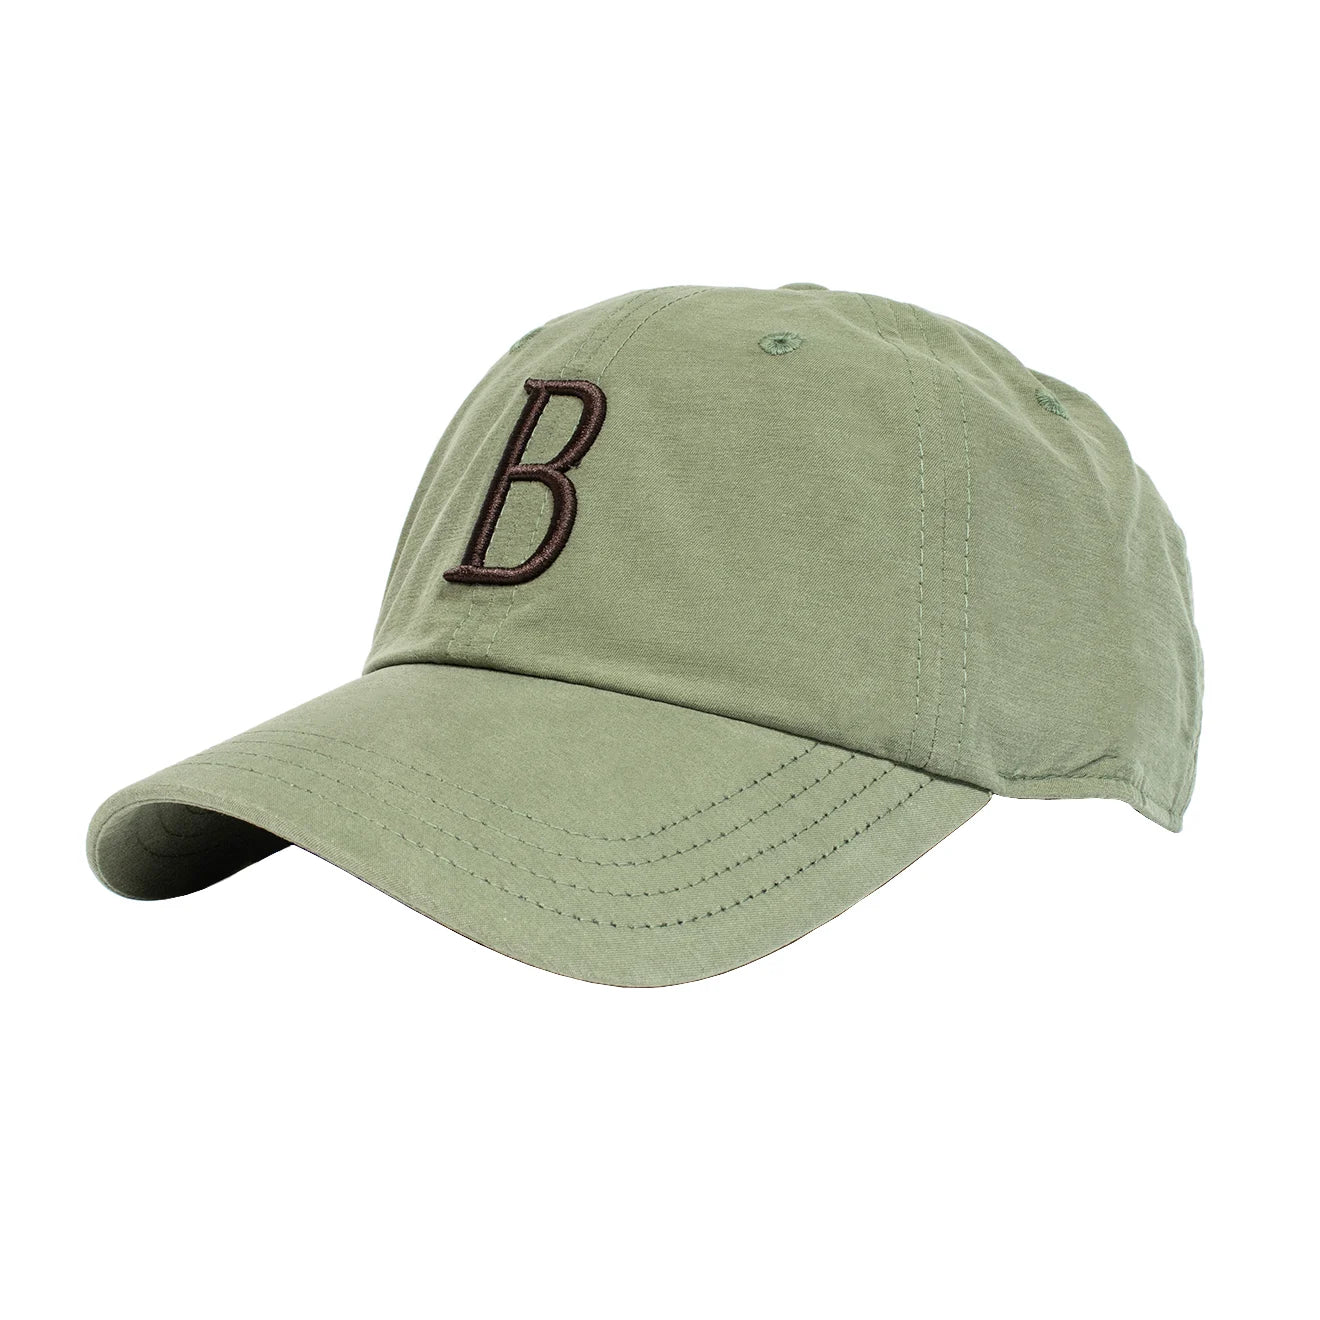 Beretta Big B Cap - Green